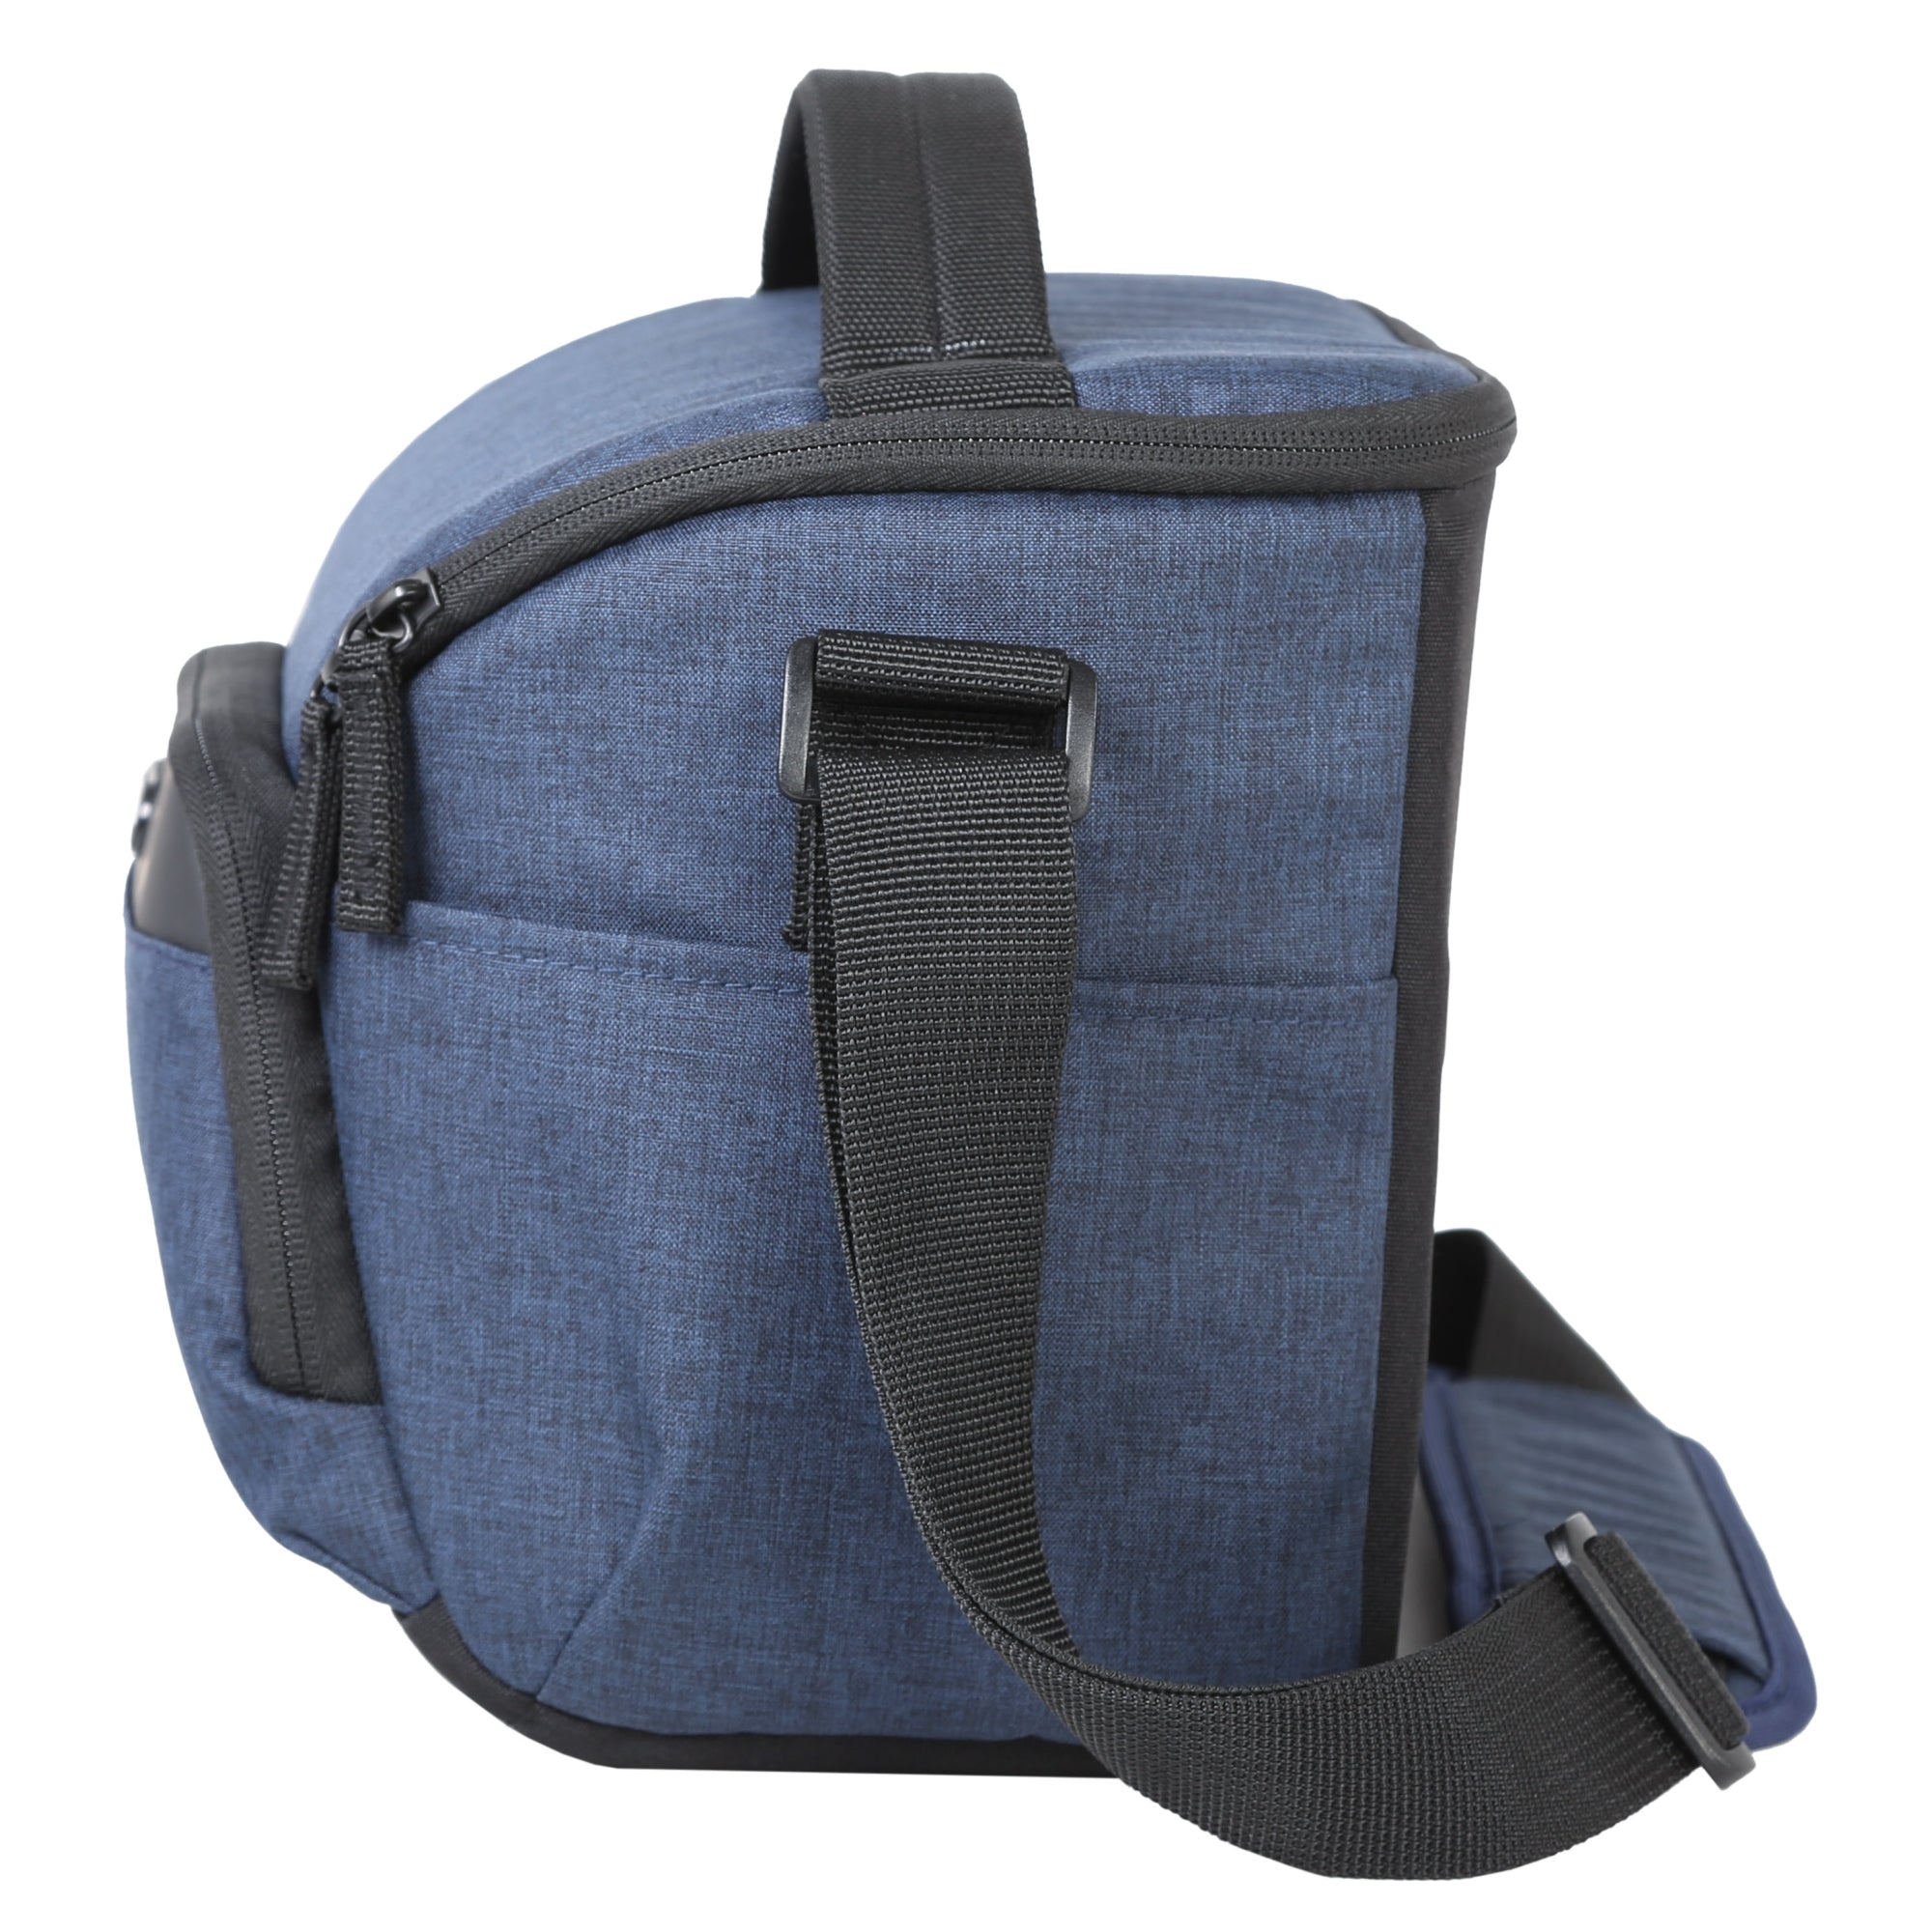 VESTA Aspire 25 NV 9 Litre Shoulder Bag - Blue – Vanguard World UK